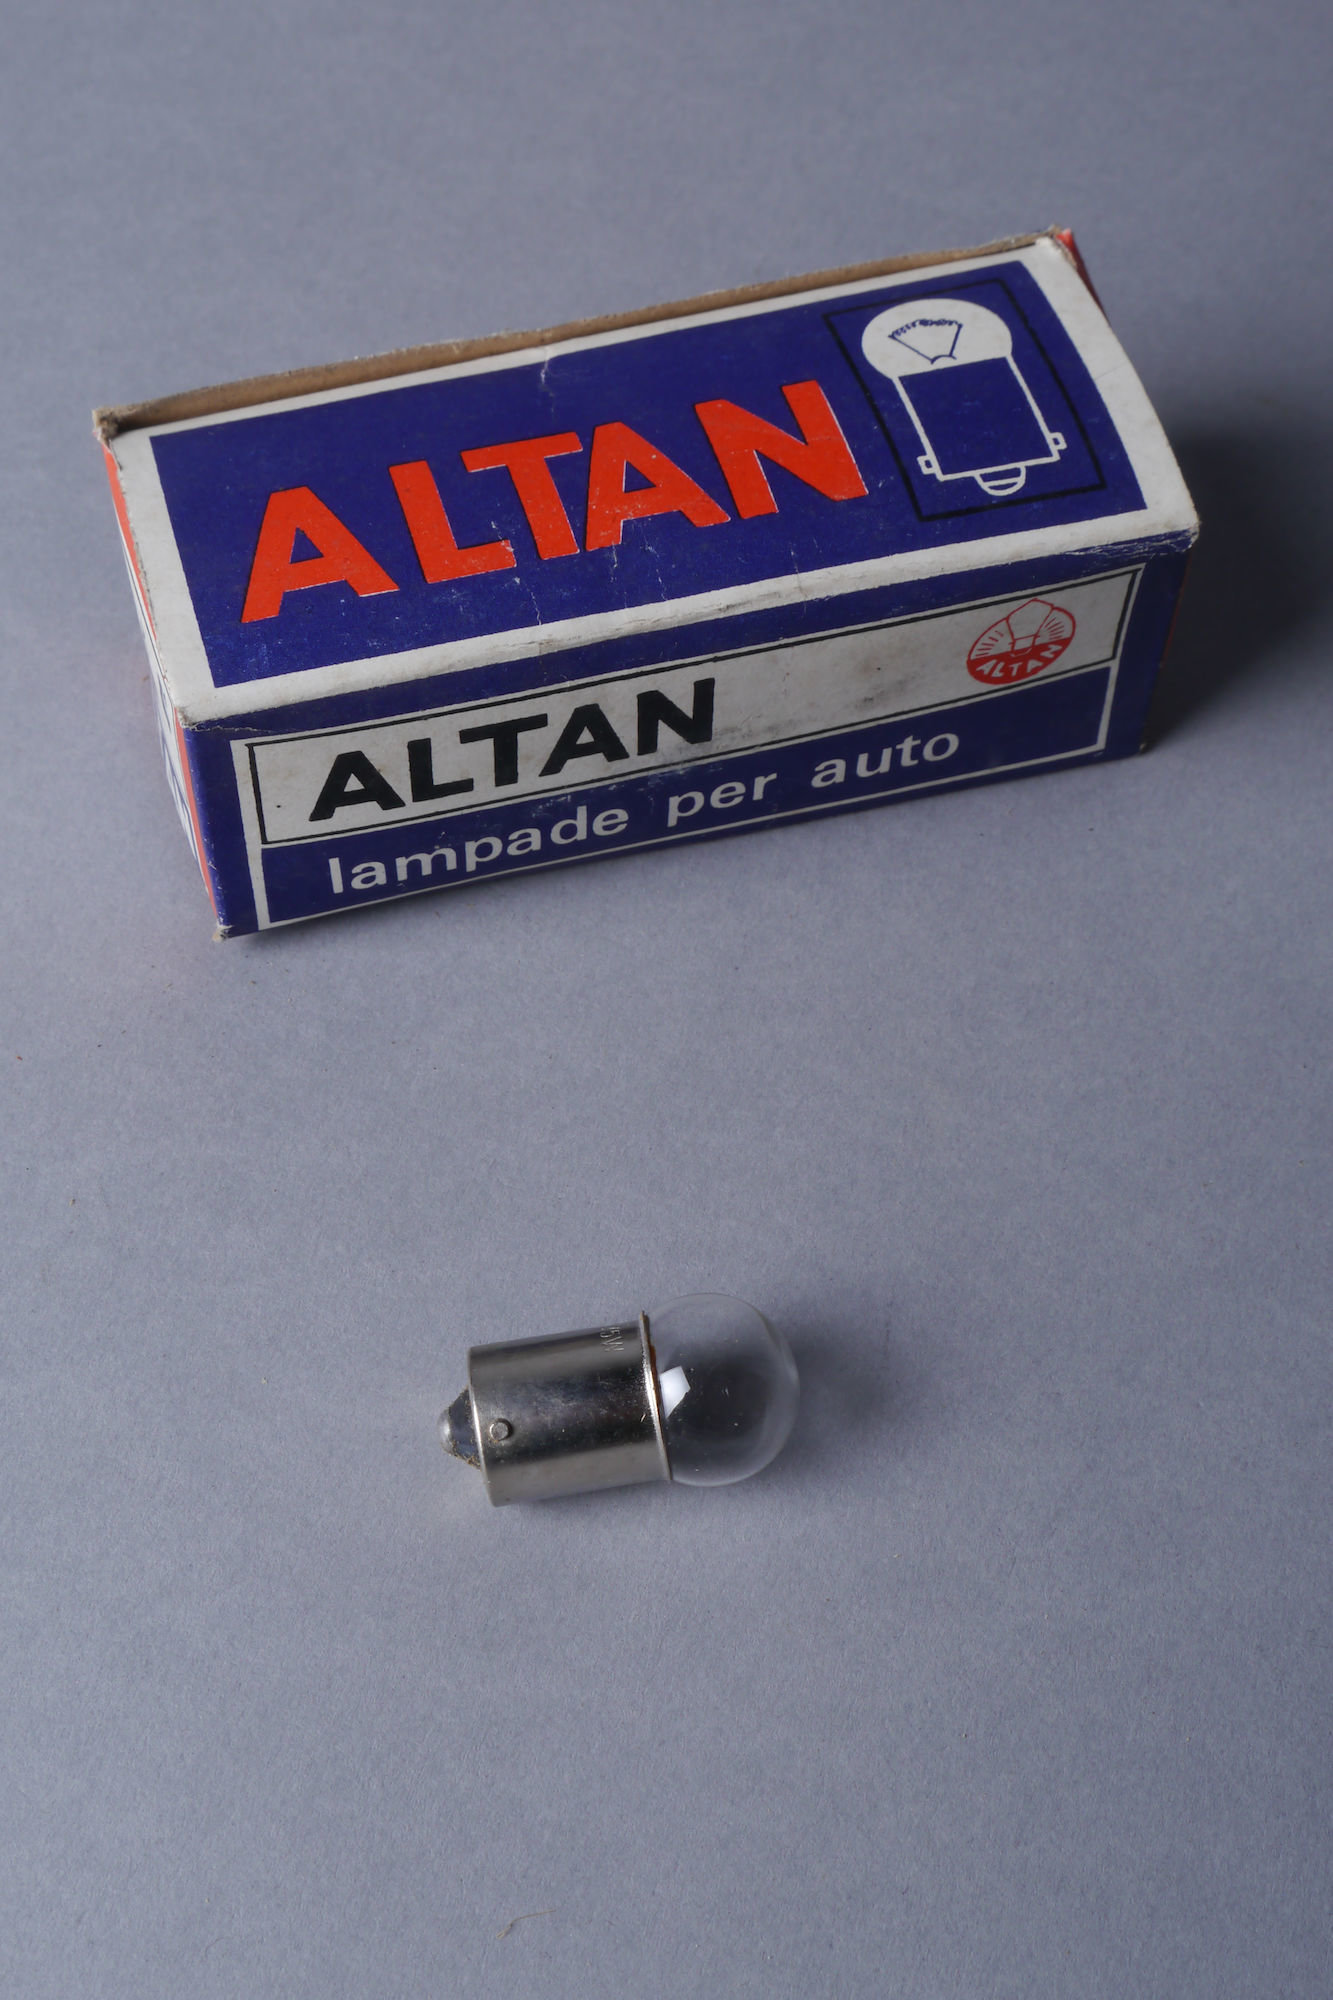 Autolamp van het merk Altan